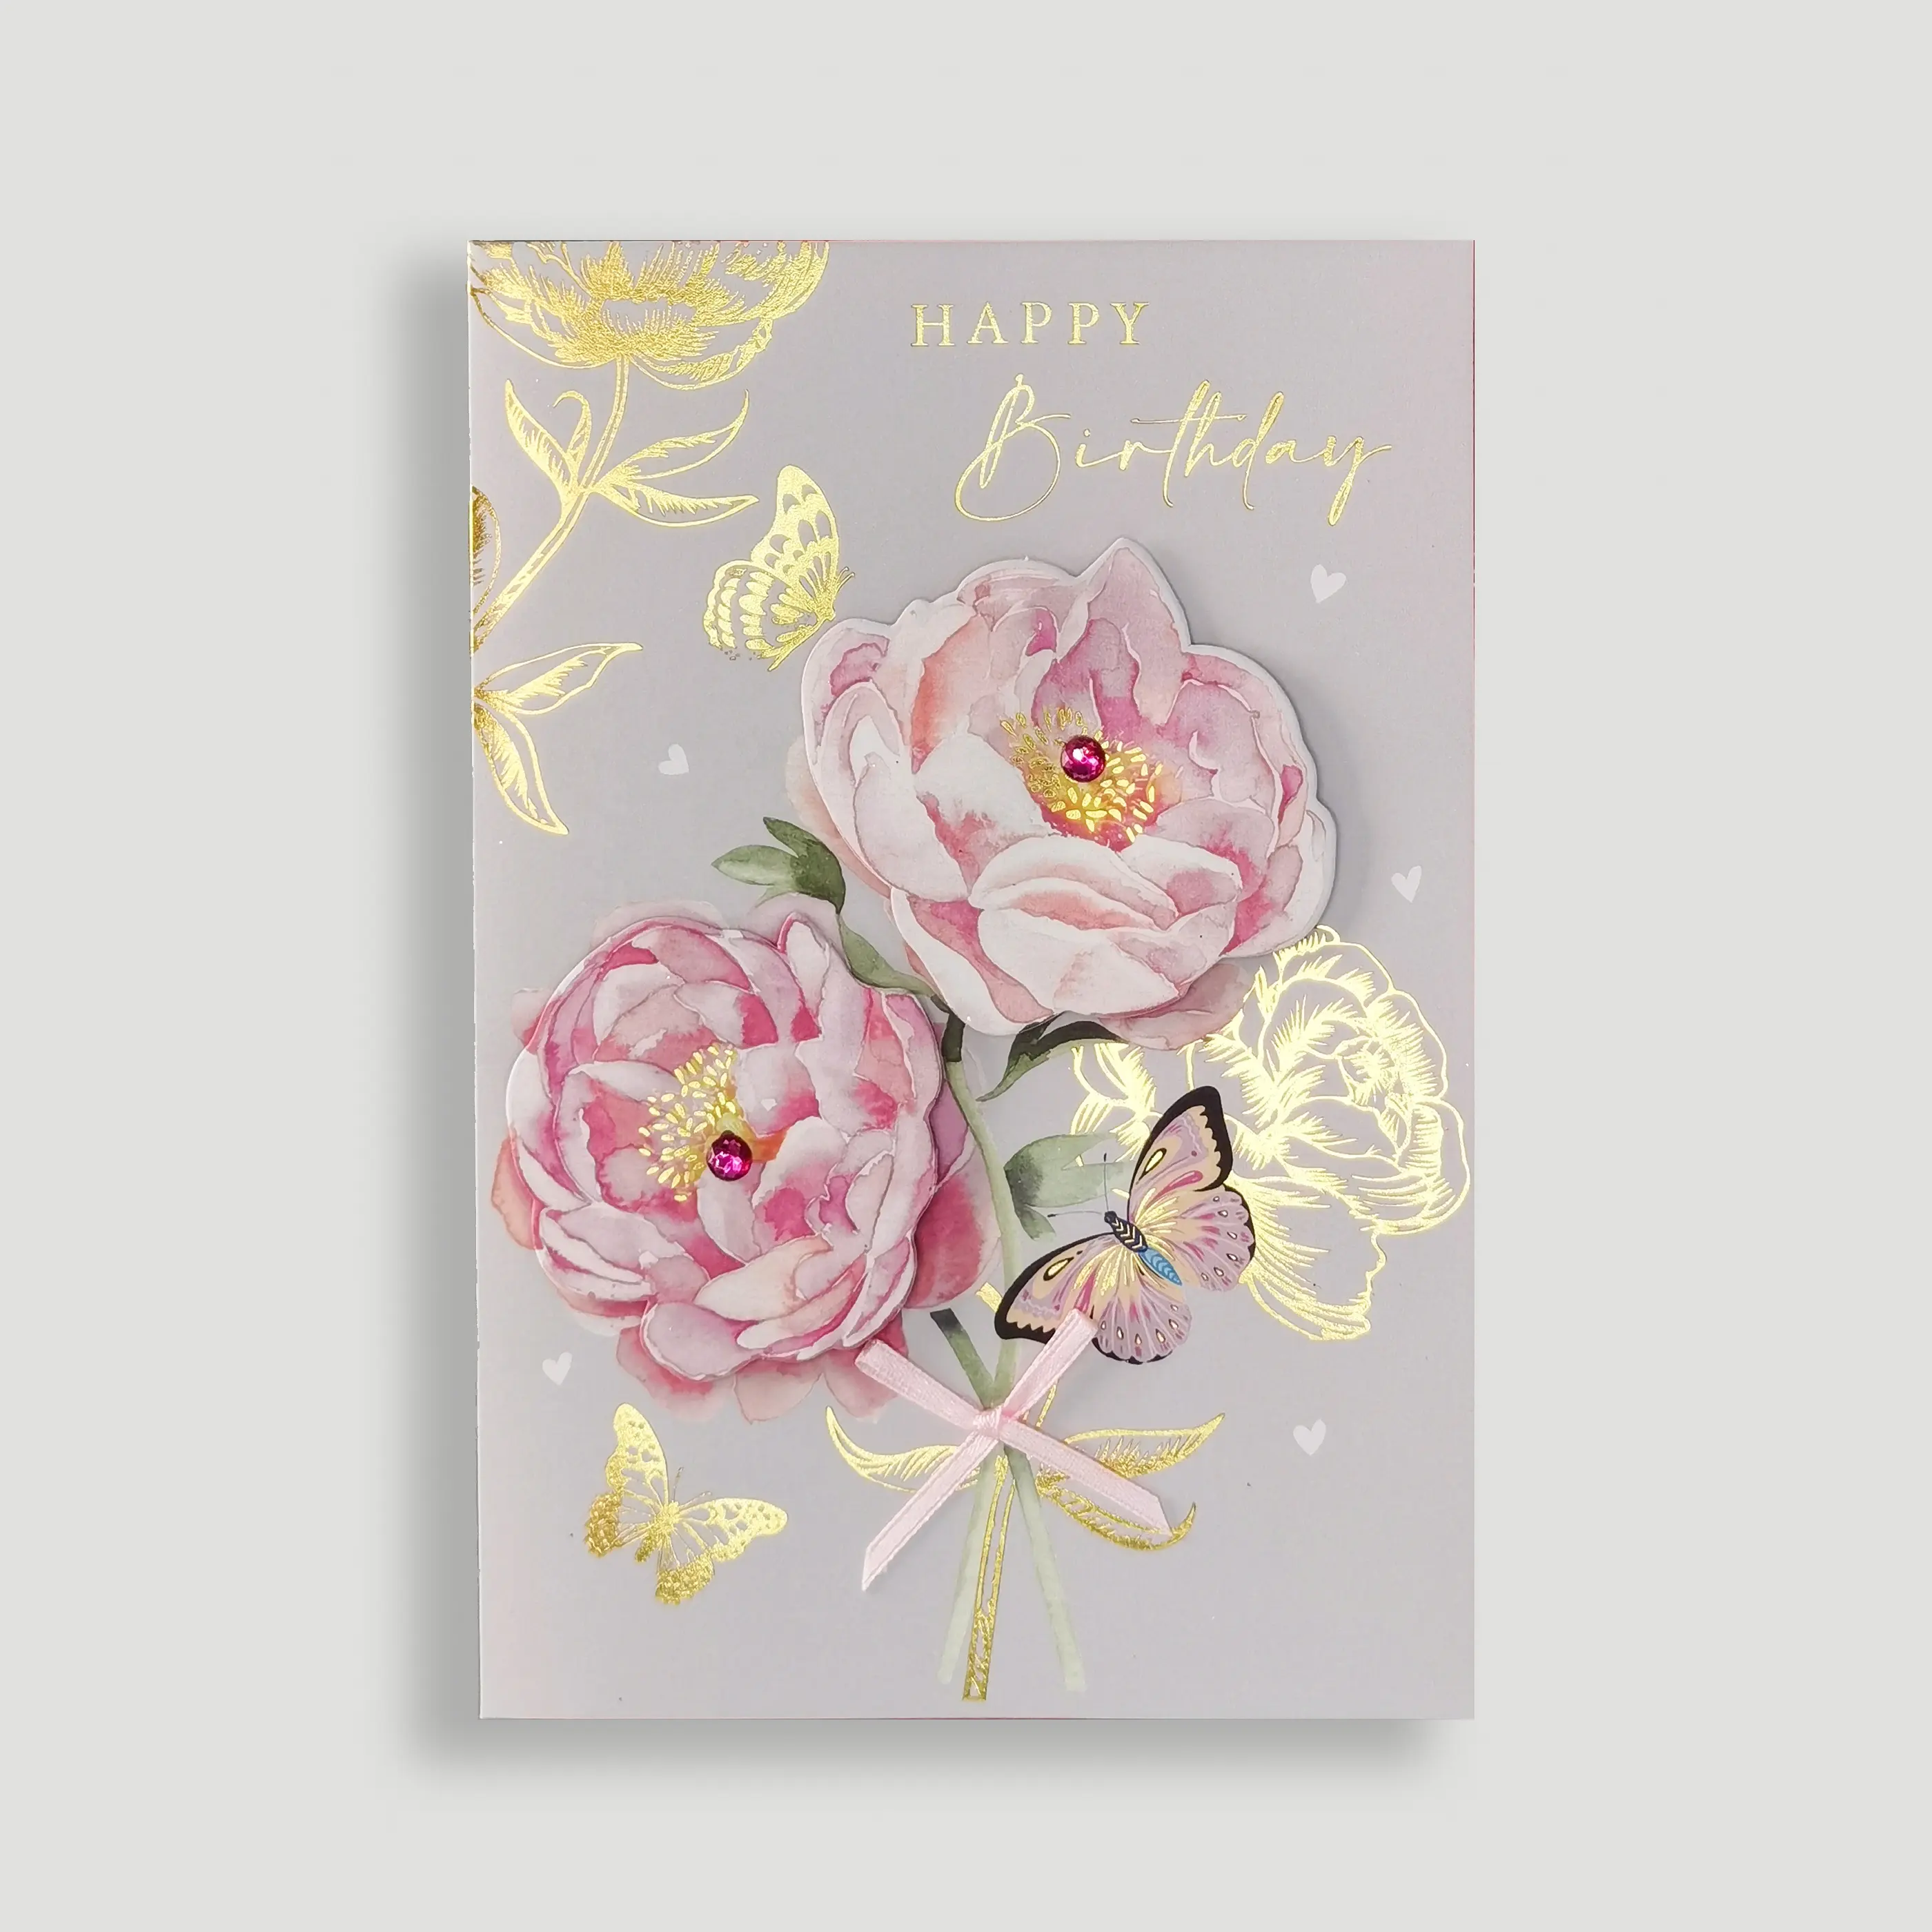 Grosir buatan tangan lapis timah bunga wanita kartu ulang tahun kosong mewah kustom kartu selamat ulang tahun dengan amplop